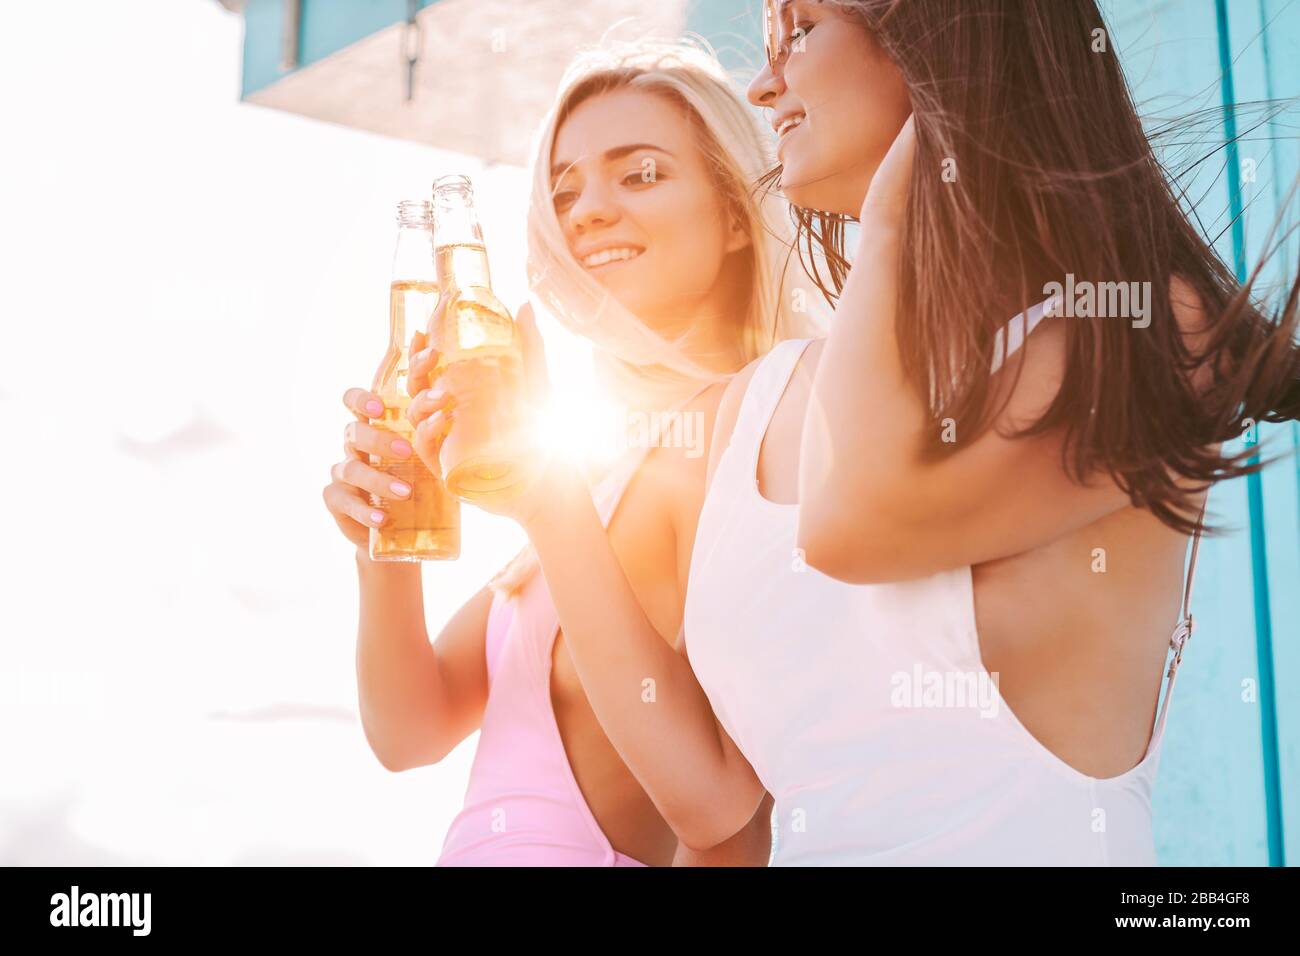 Portrait de deux belles filles acclamer et se posant avec des bouteilles de bière au bord de la mer. Jeunes femmes attrayantes amis boire de la bière froide et s'amuser Banque D'Images